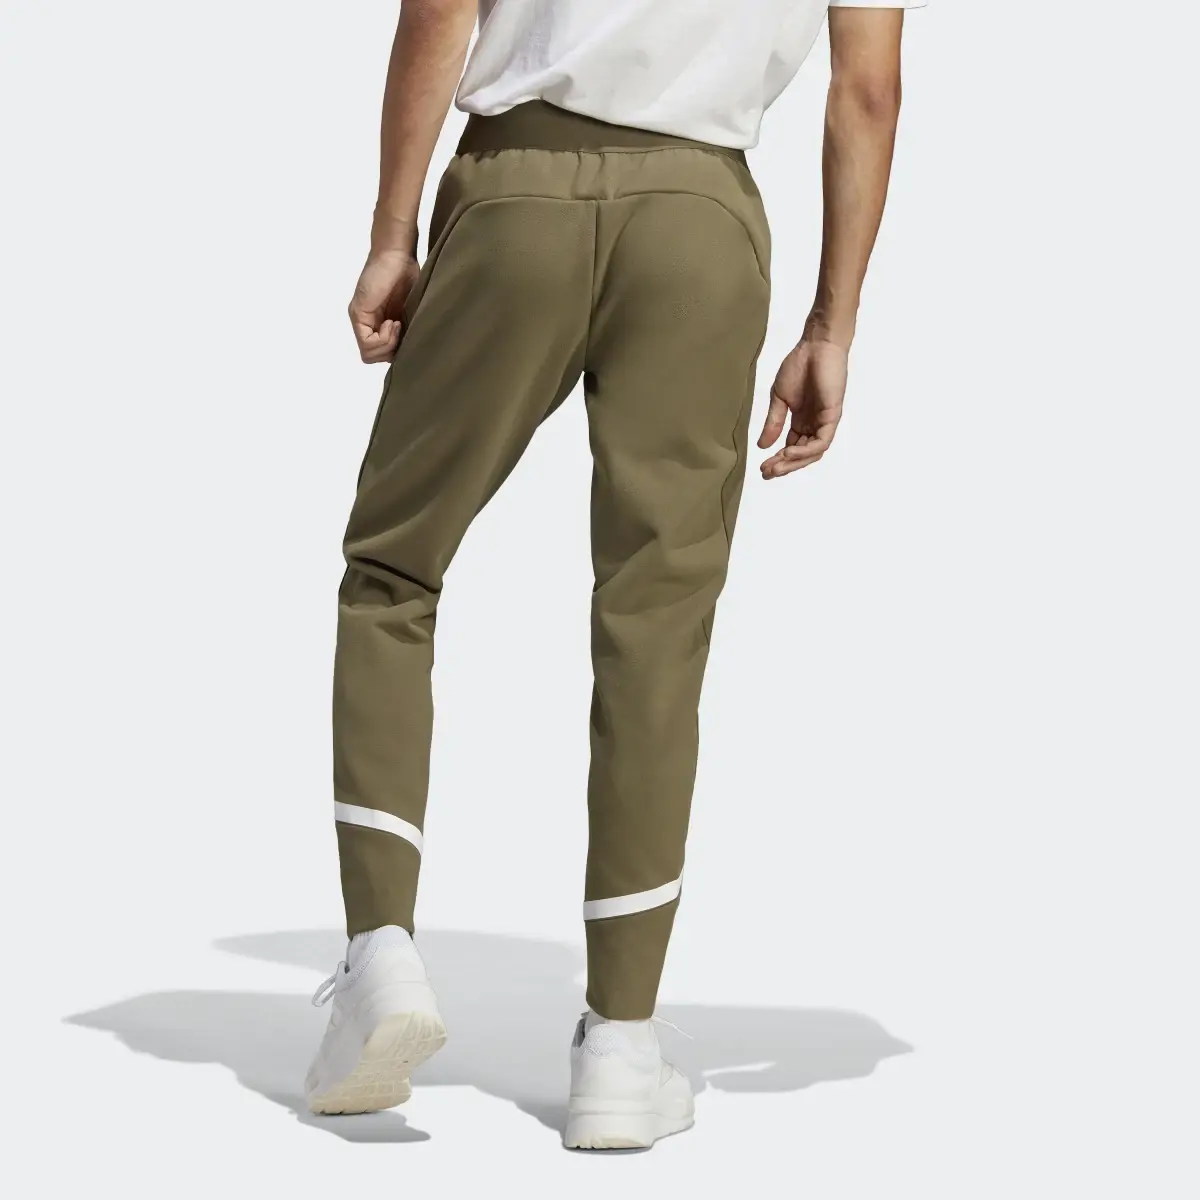 Adidas Pantaloni Designed 4 Gameday. 2